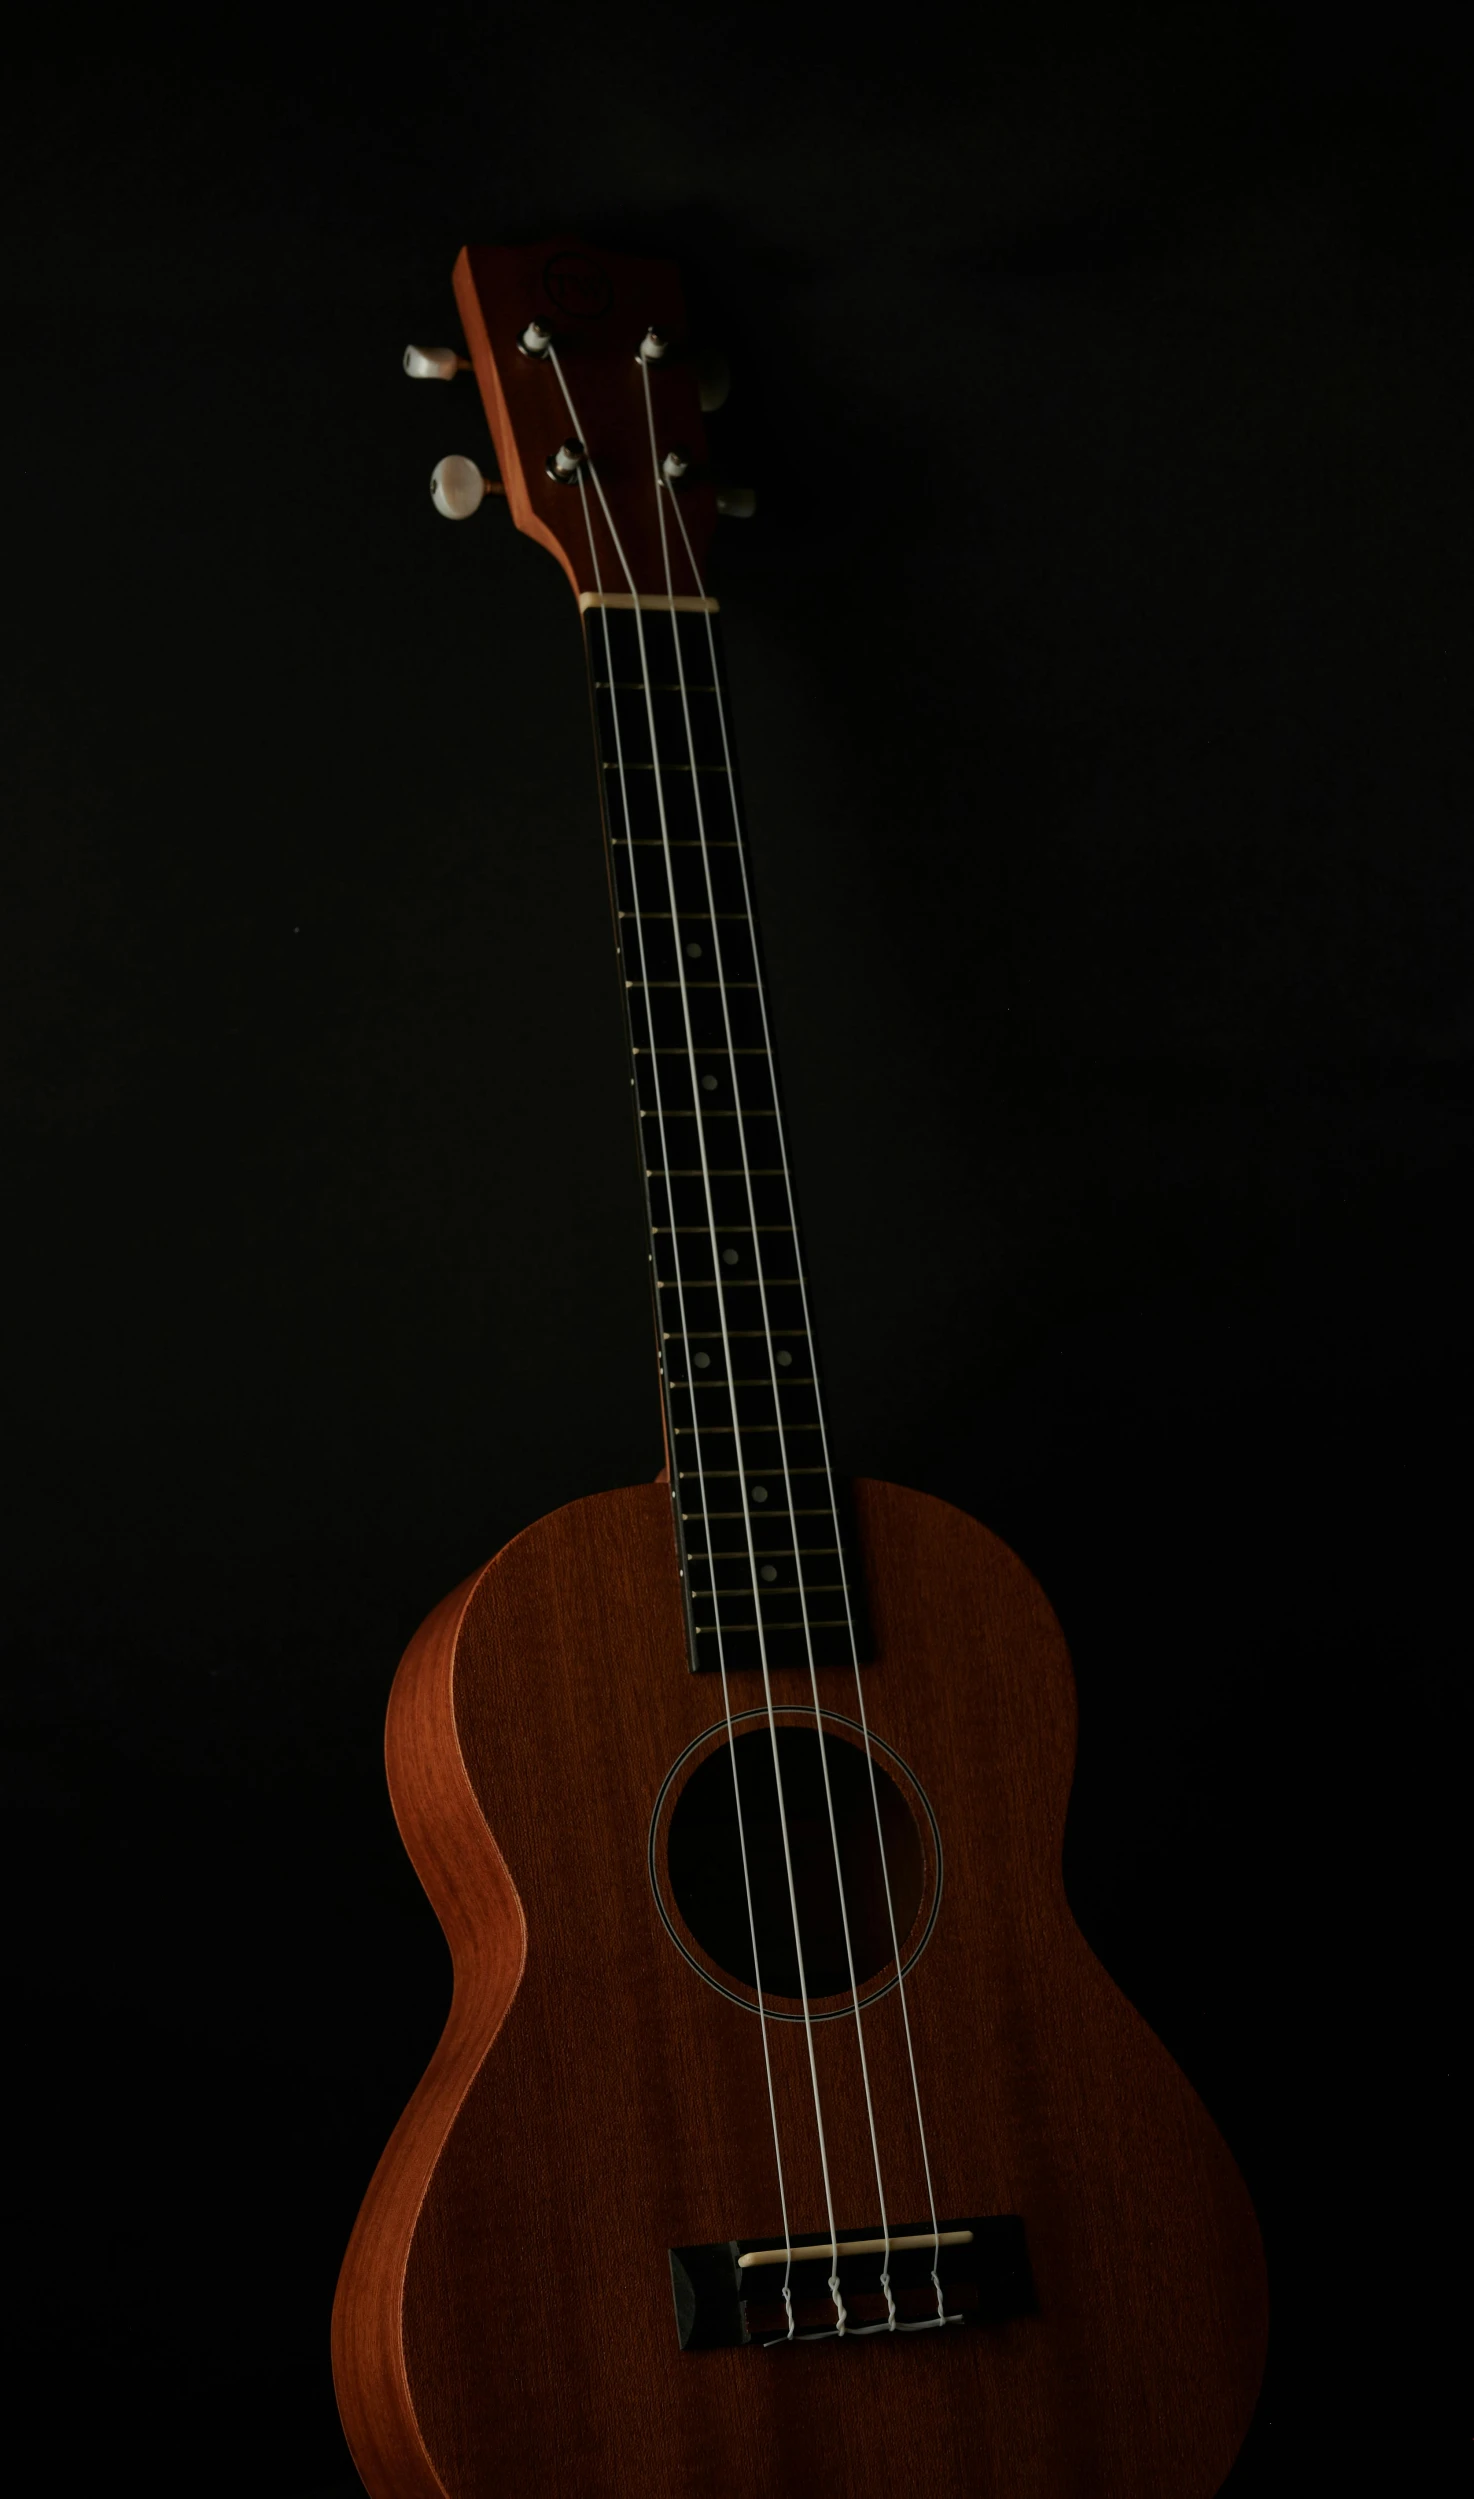 a ukulele sitting upright against a black background